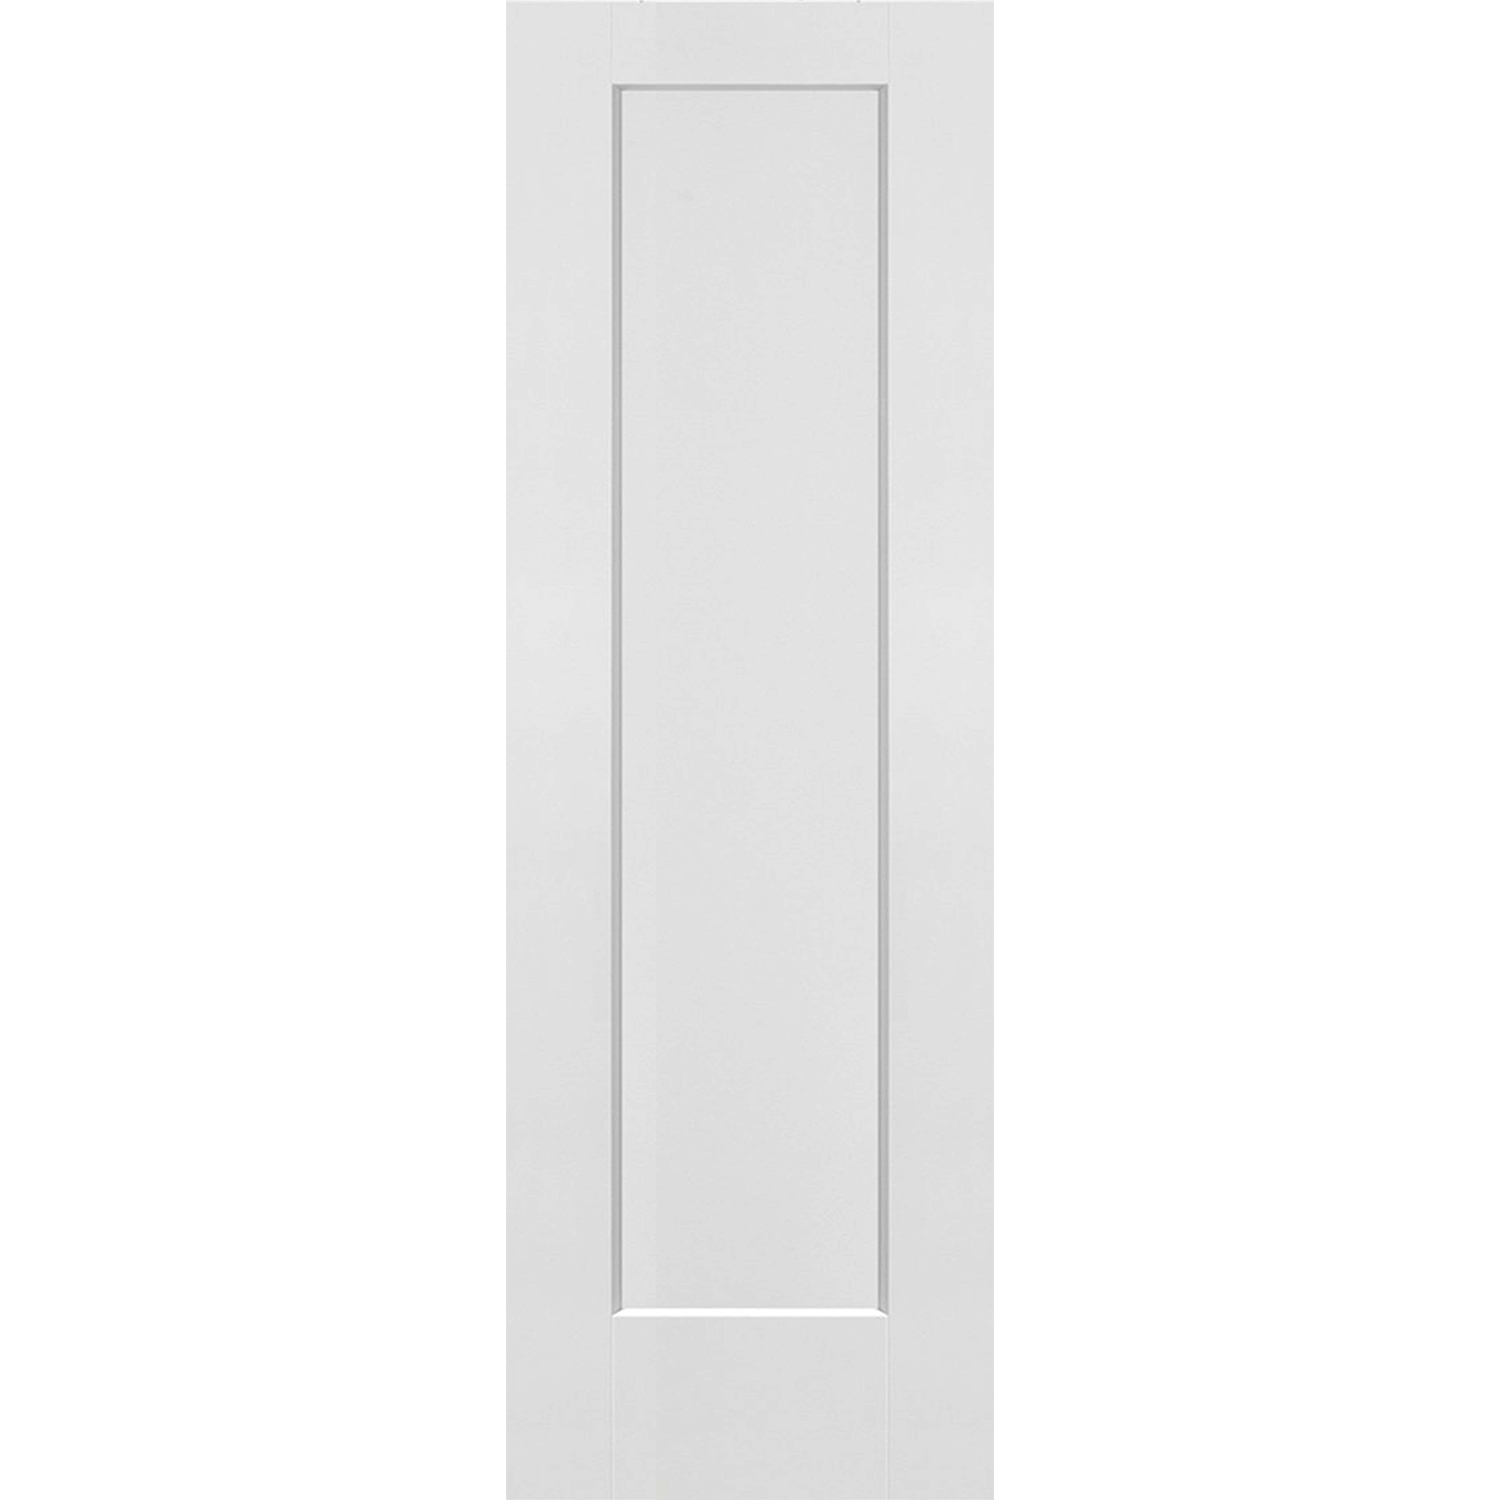 1 Panel Solid Door - 26 x 80